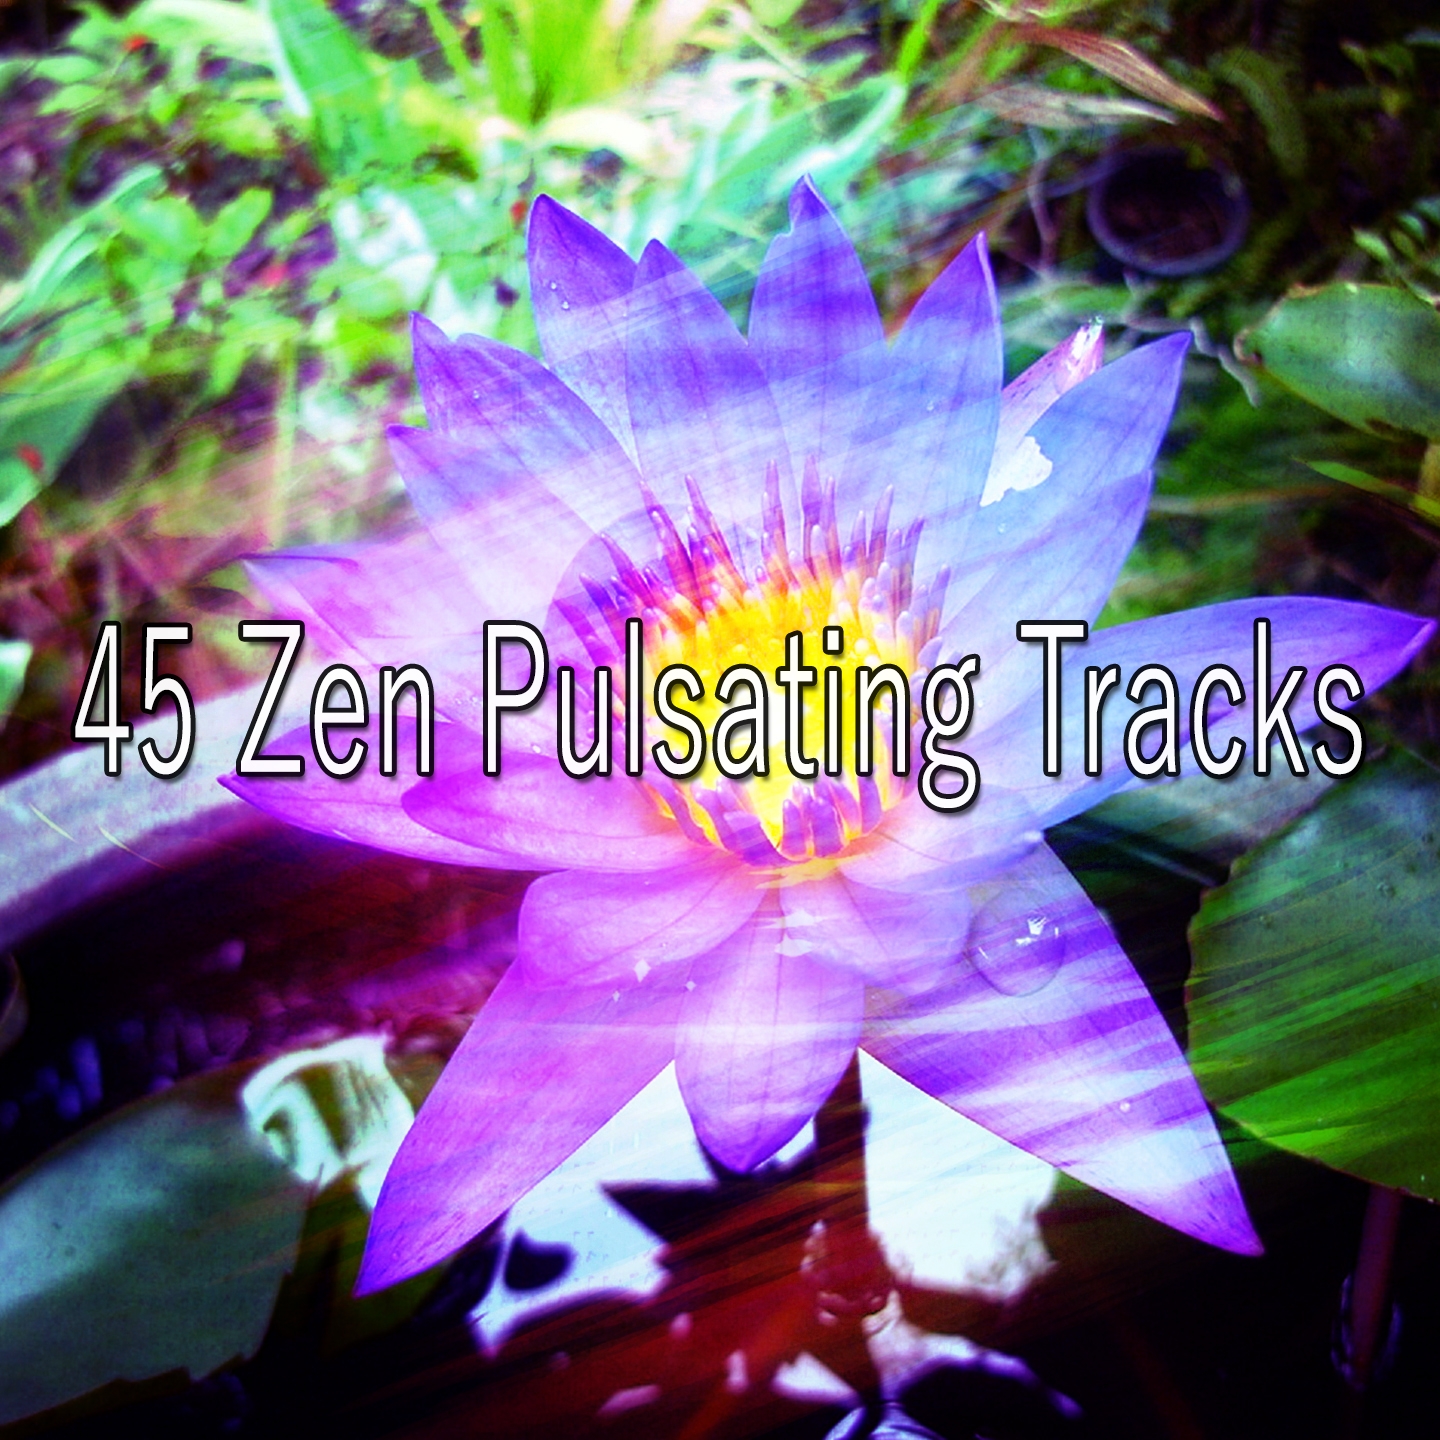 45 Zen Pulsating Tracks